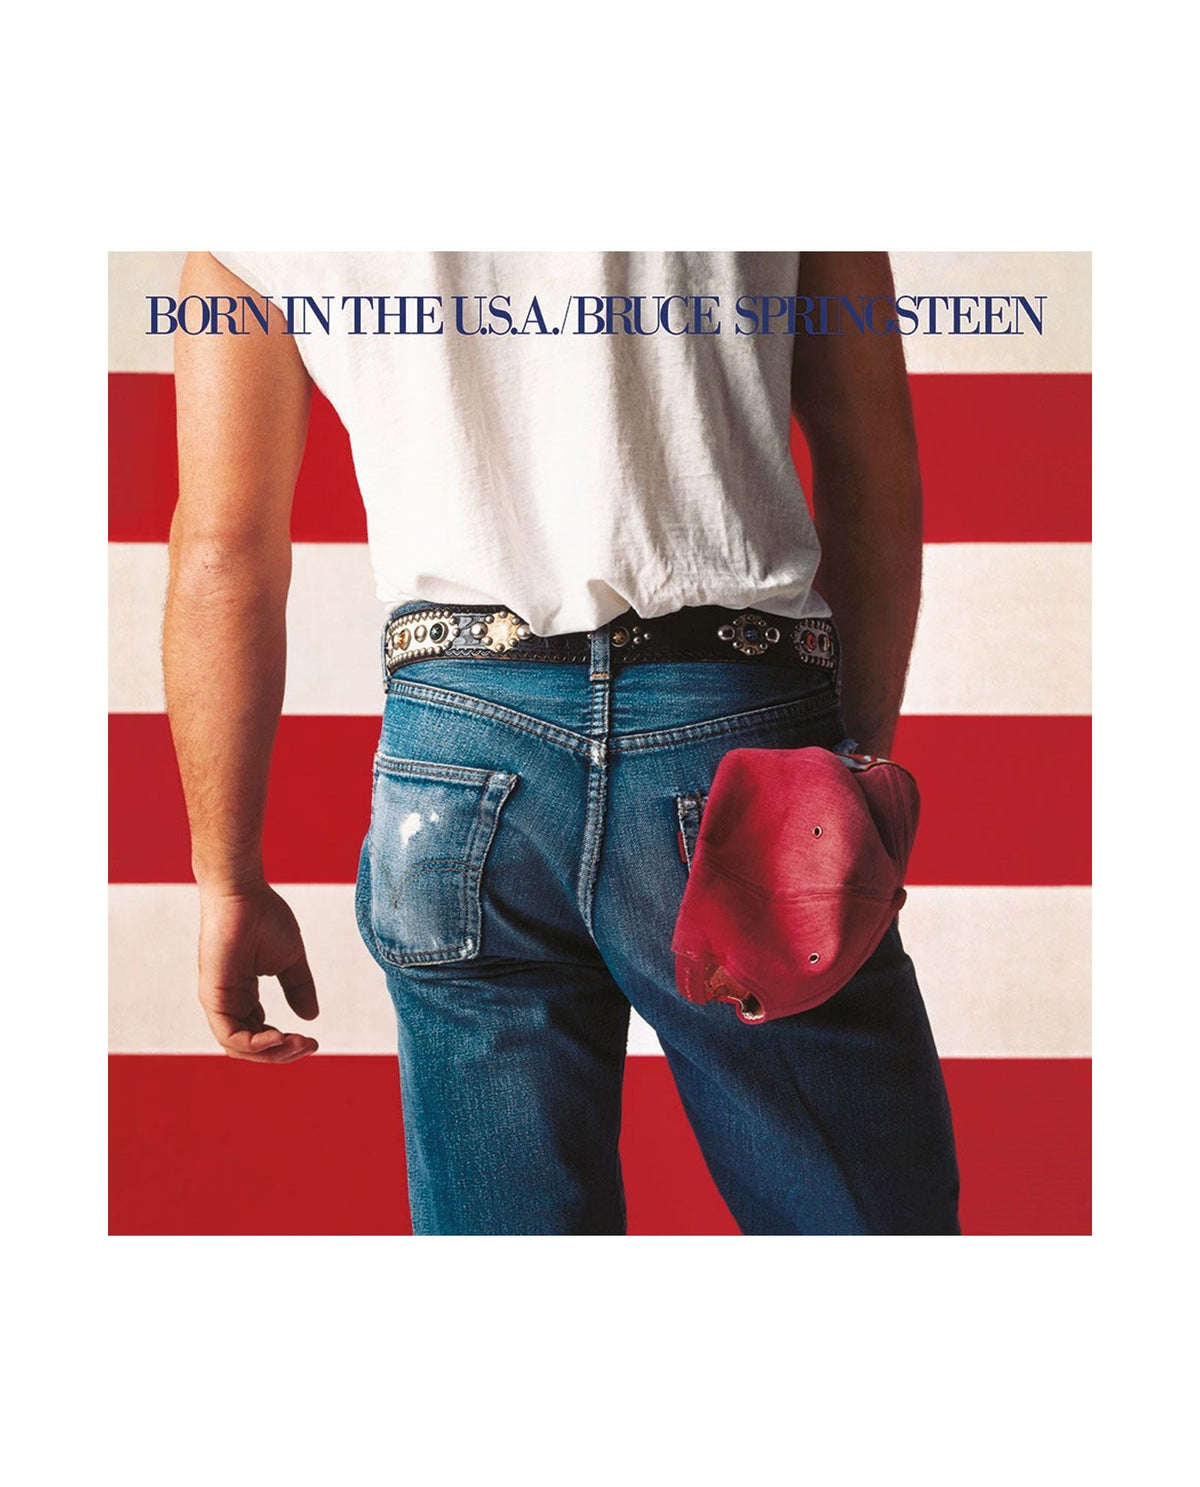 Bruce Springsteen - LP Vinilo Rojo "Born in the U.S.A." 40th Anniversary Edition - D2fy · Rocktud - Rocktud